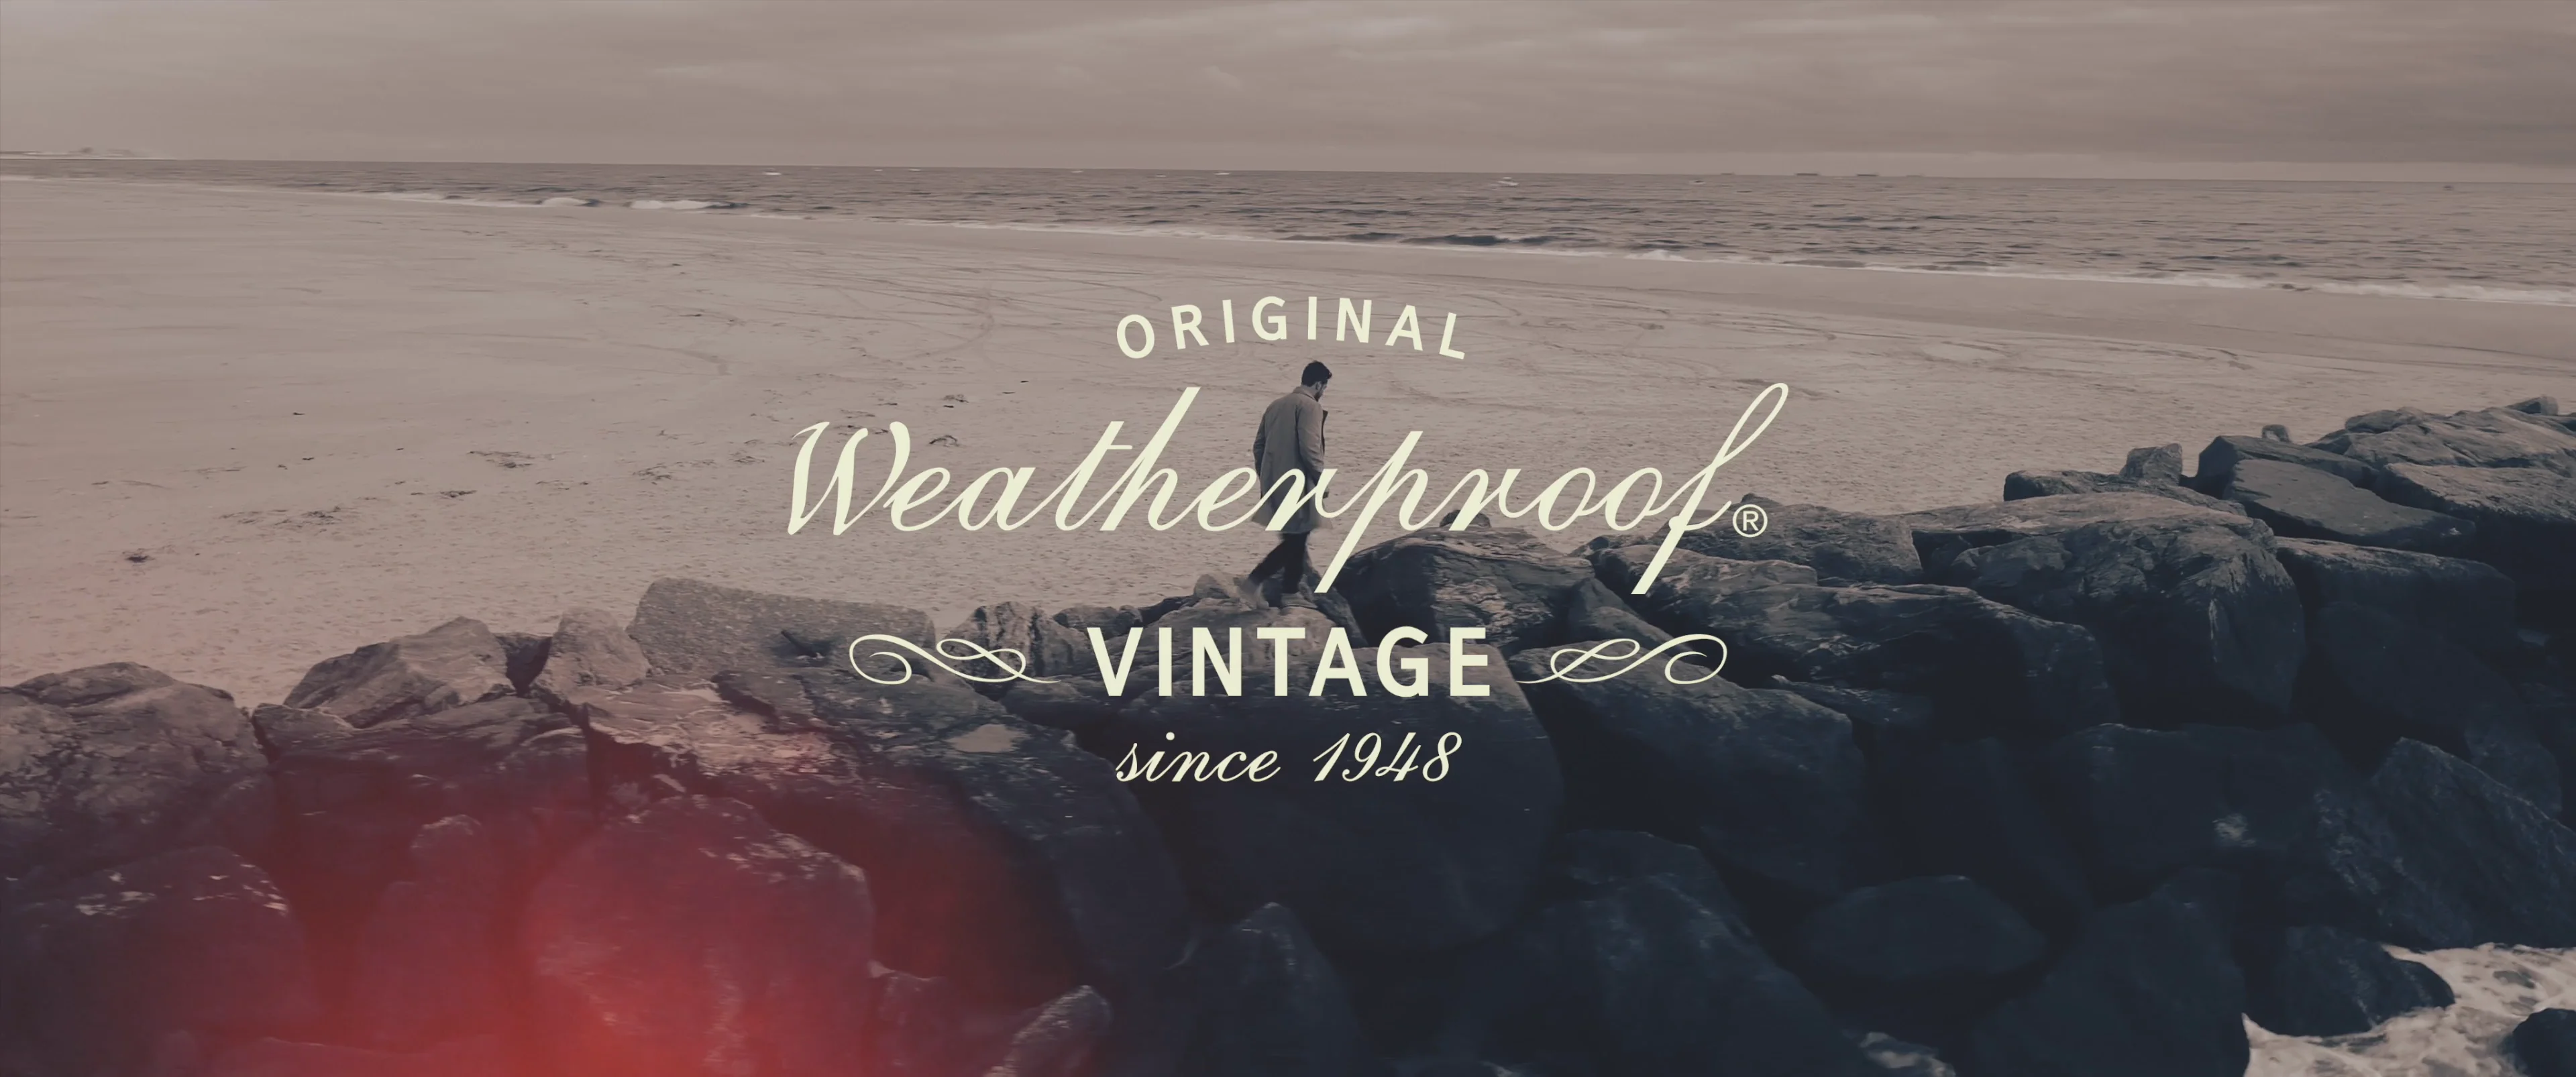 Weatherproof® Vintage